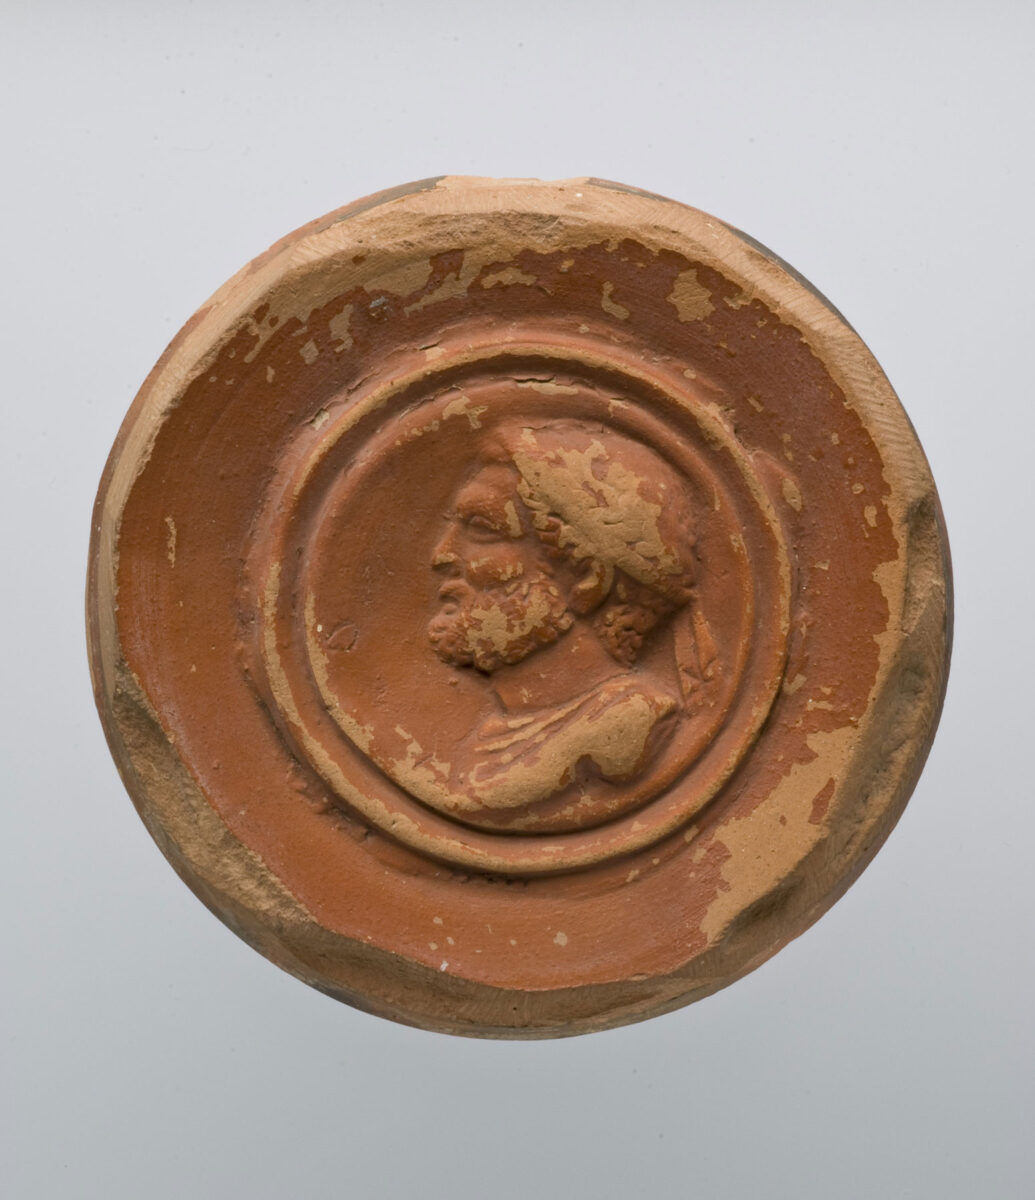 Έμβλημα από πυθμένα πήλινου αγγείου του 3ου αι. μ.Χ. με προτομή γενειοφόρου και θωρακοφόρου Φιλίππου Β'. Πηγή εικόνας: Μουσείο Κυκλαδικής Τέχνης.